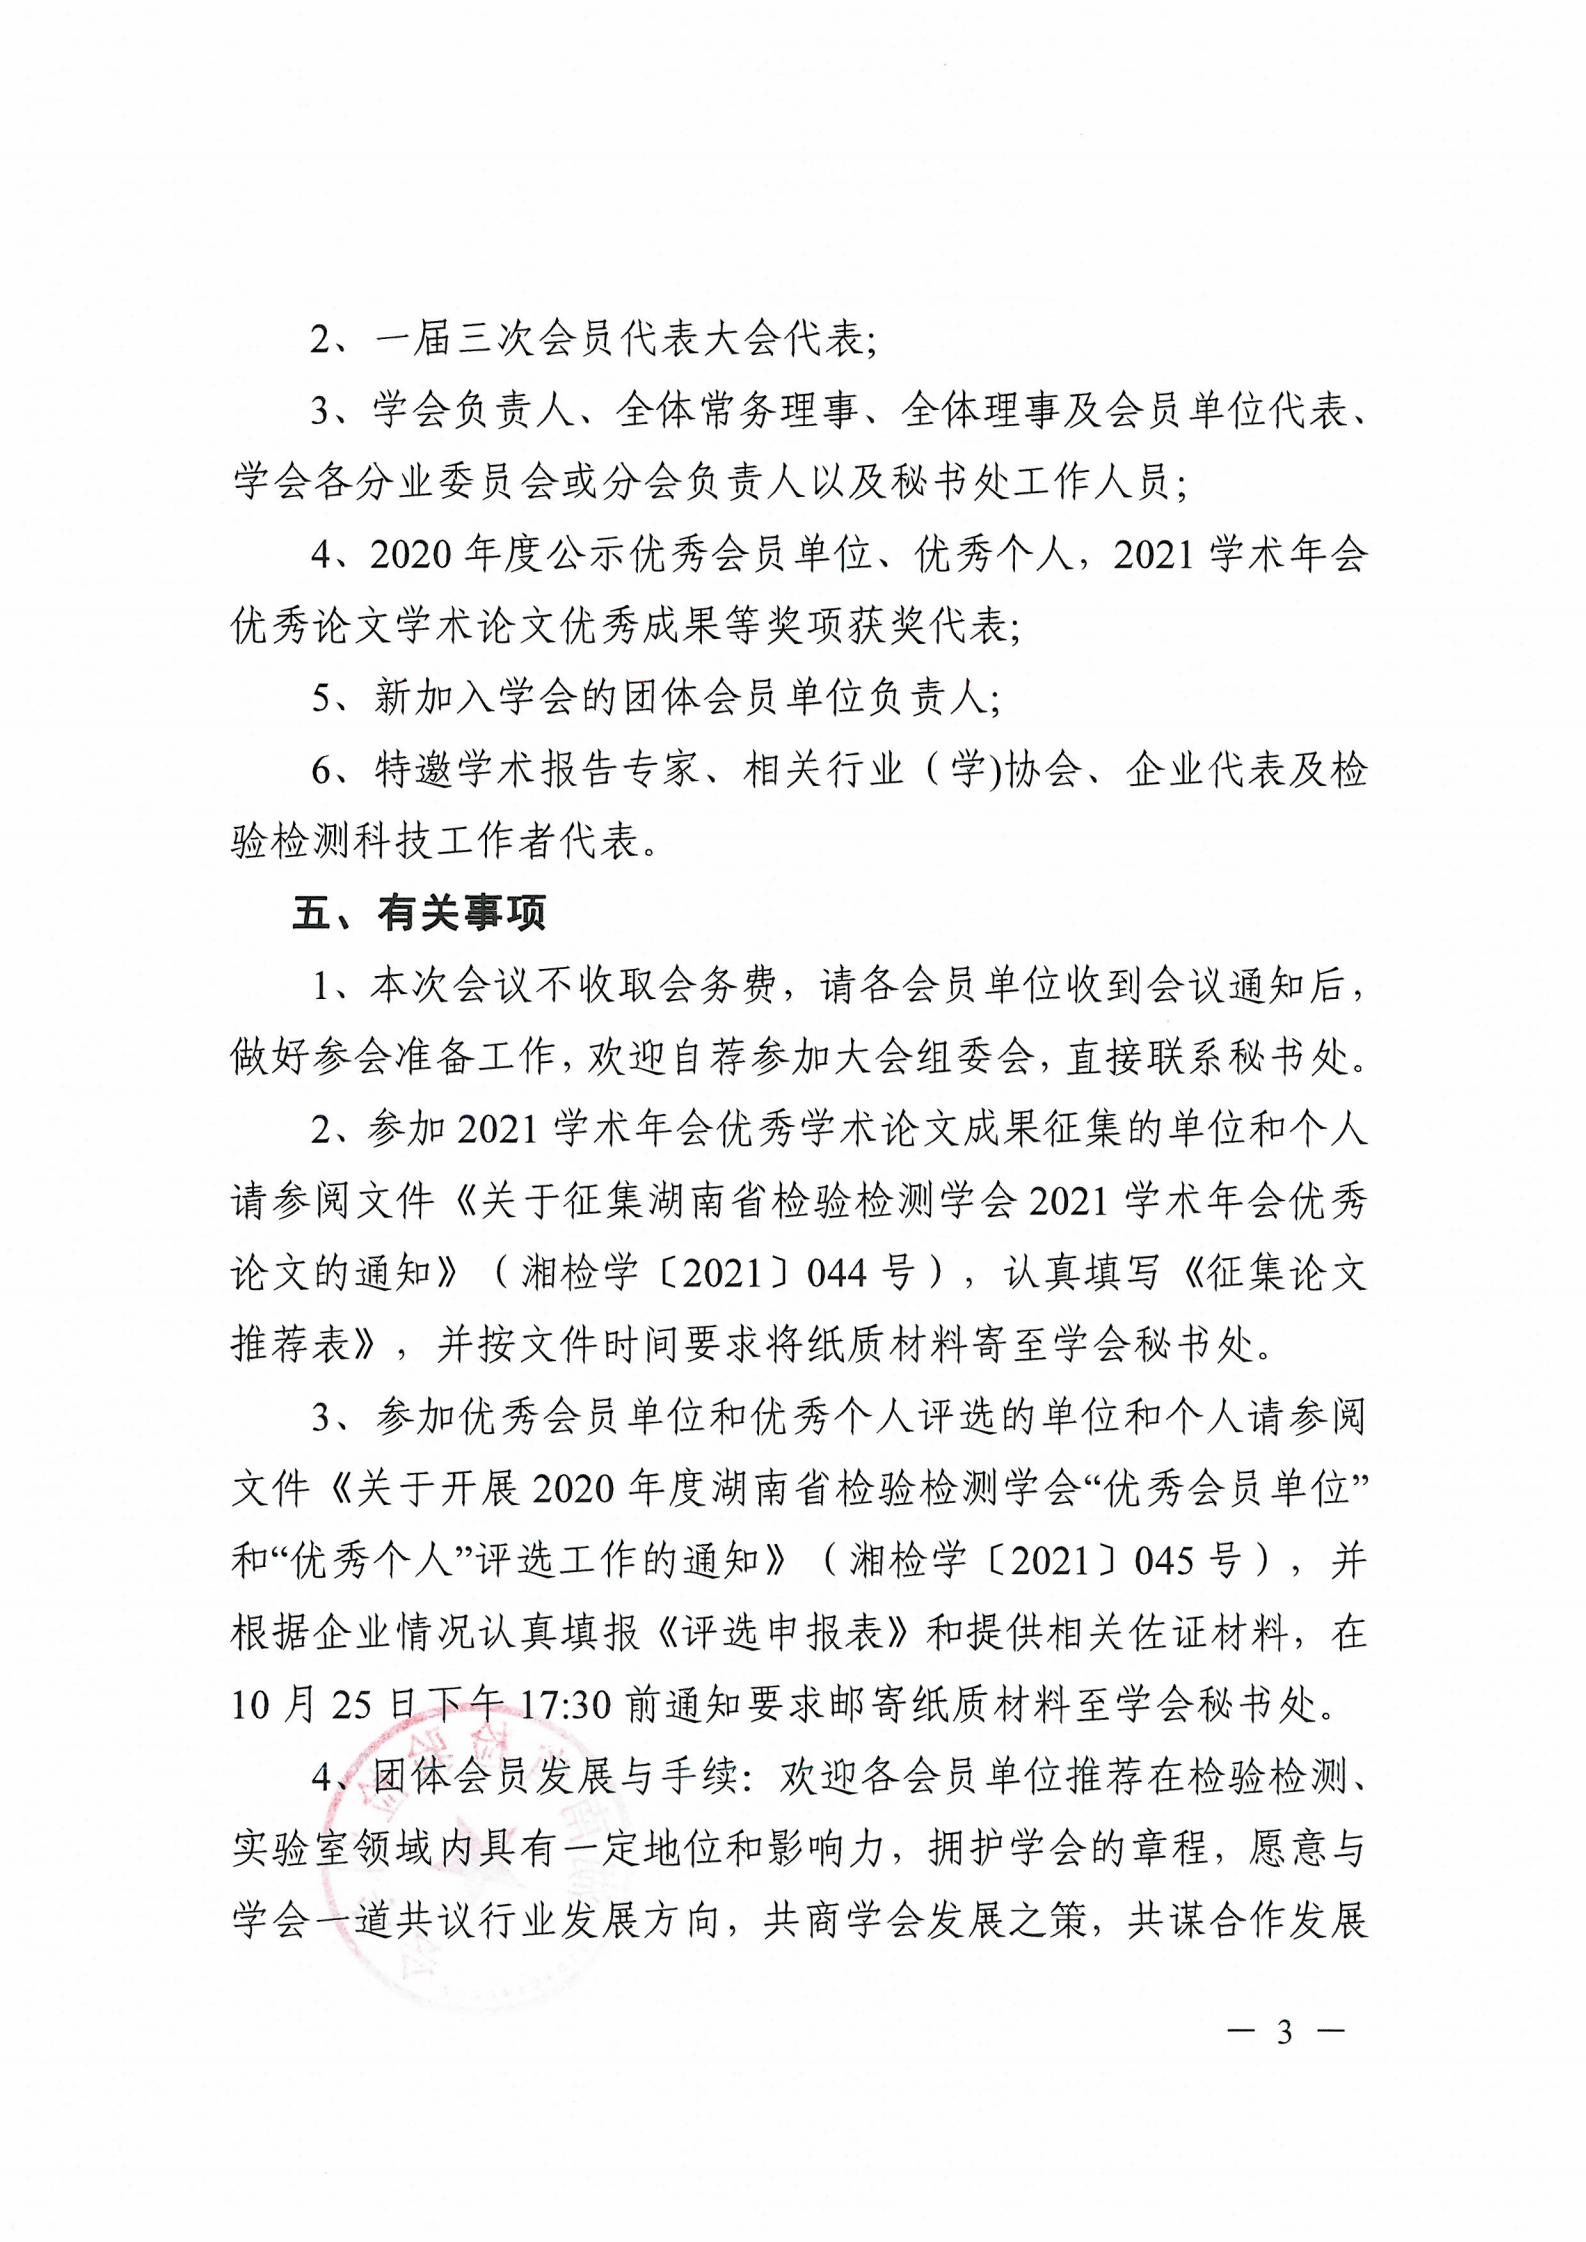 【会议通知】关于召开湖南省检验检测学会一届三次会员代表大会暨2021学术年会的预通知(图3)